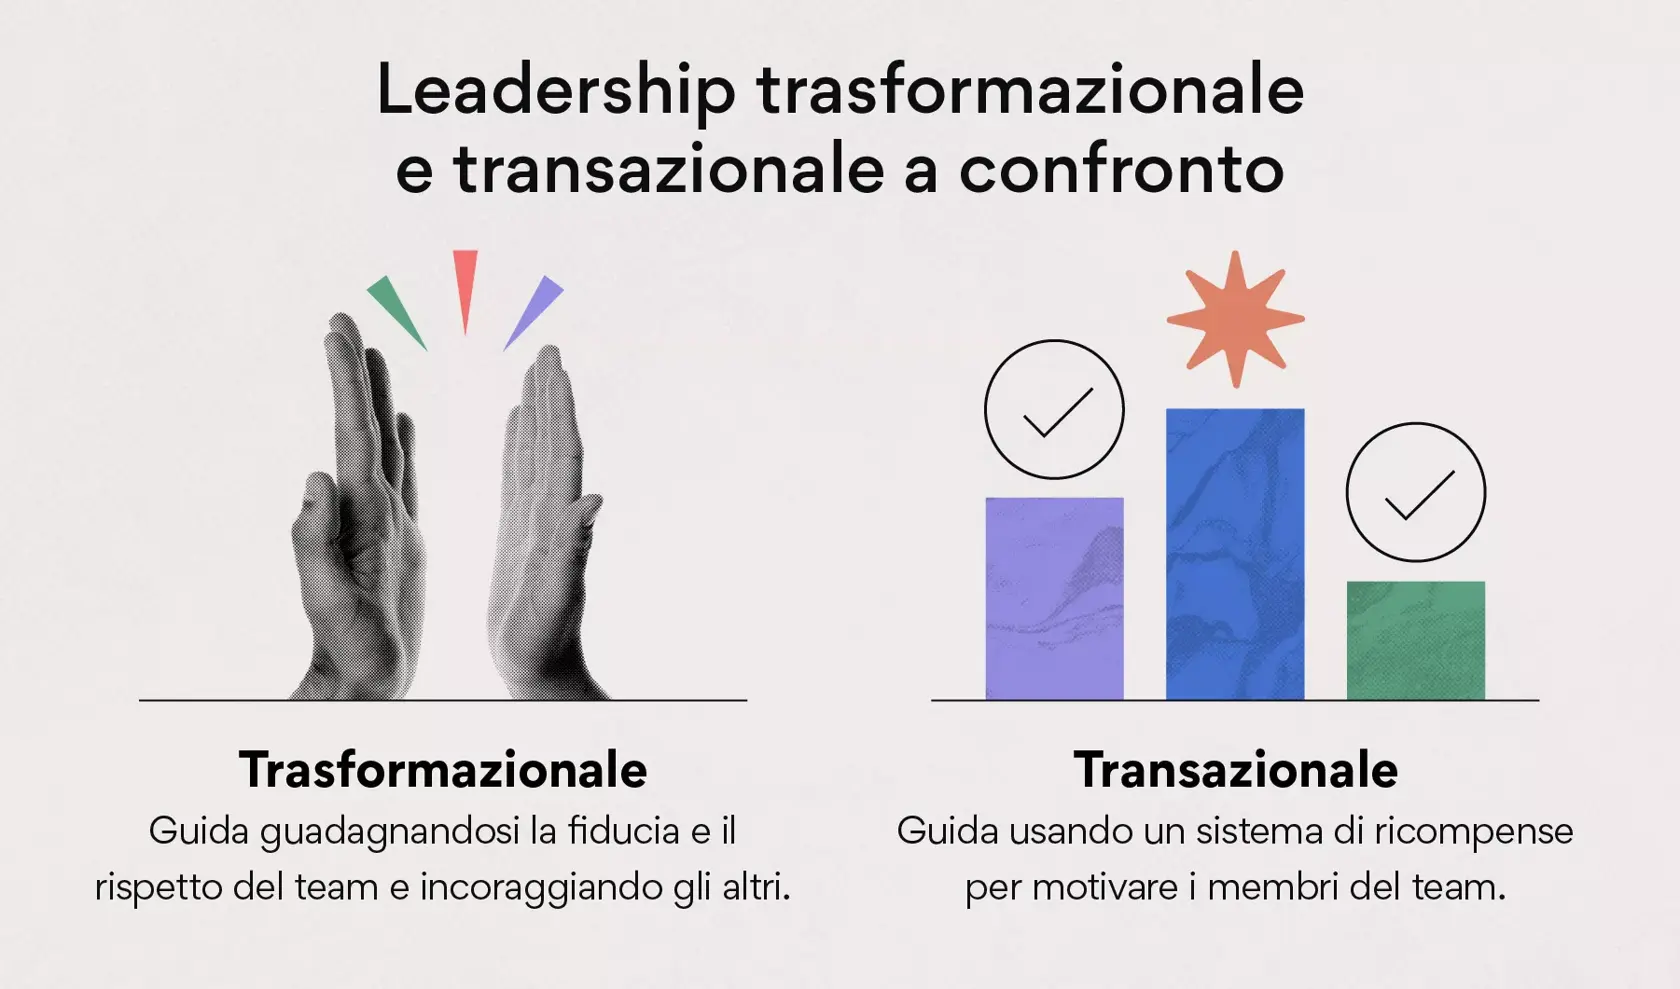 Leadership trasformazionale e transazionale a confronto